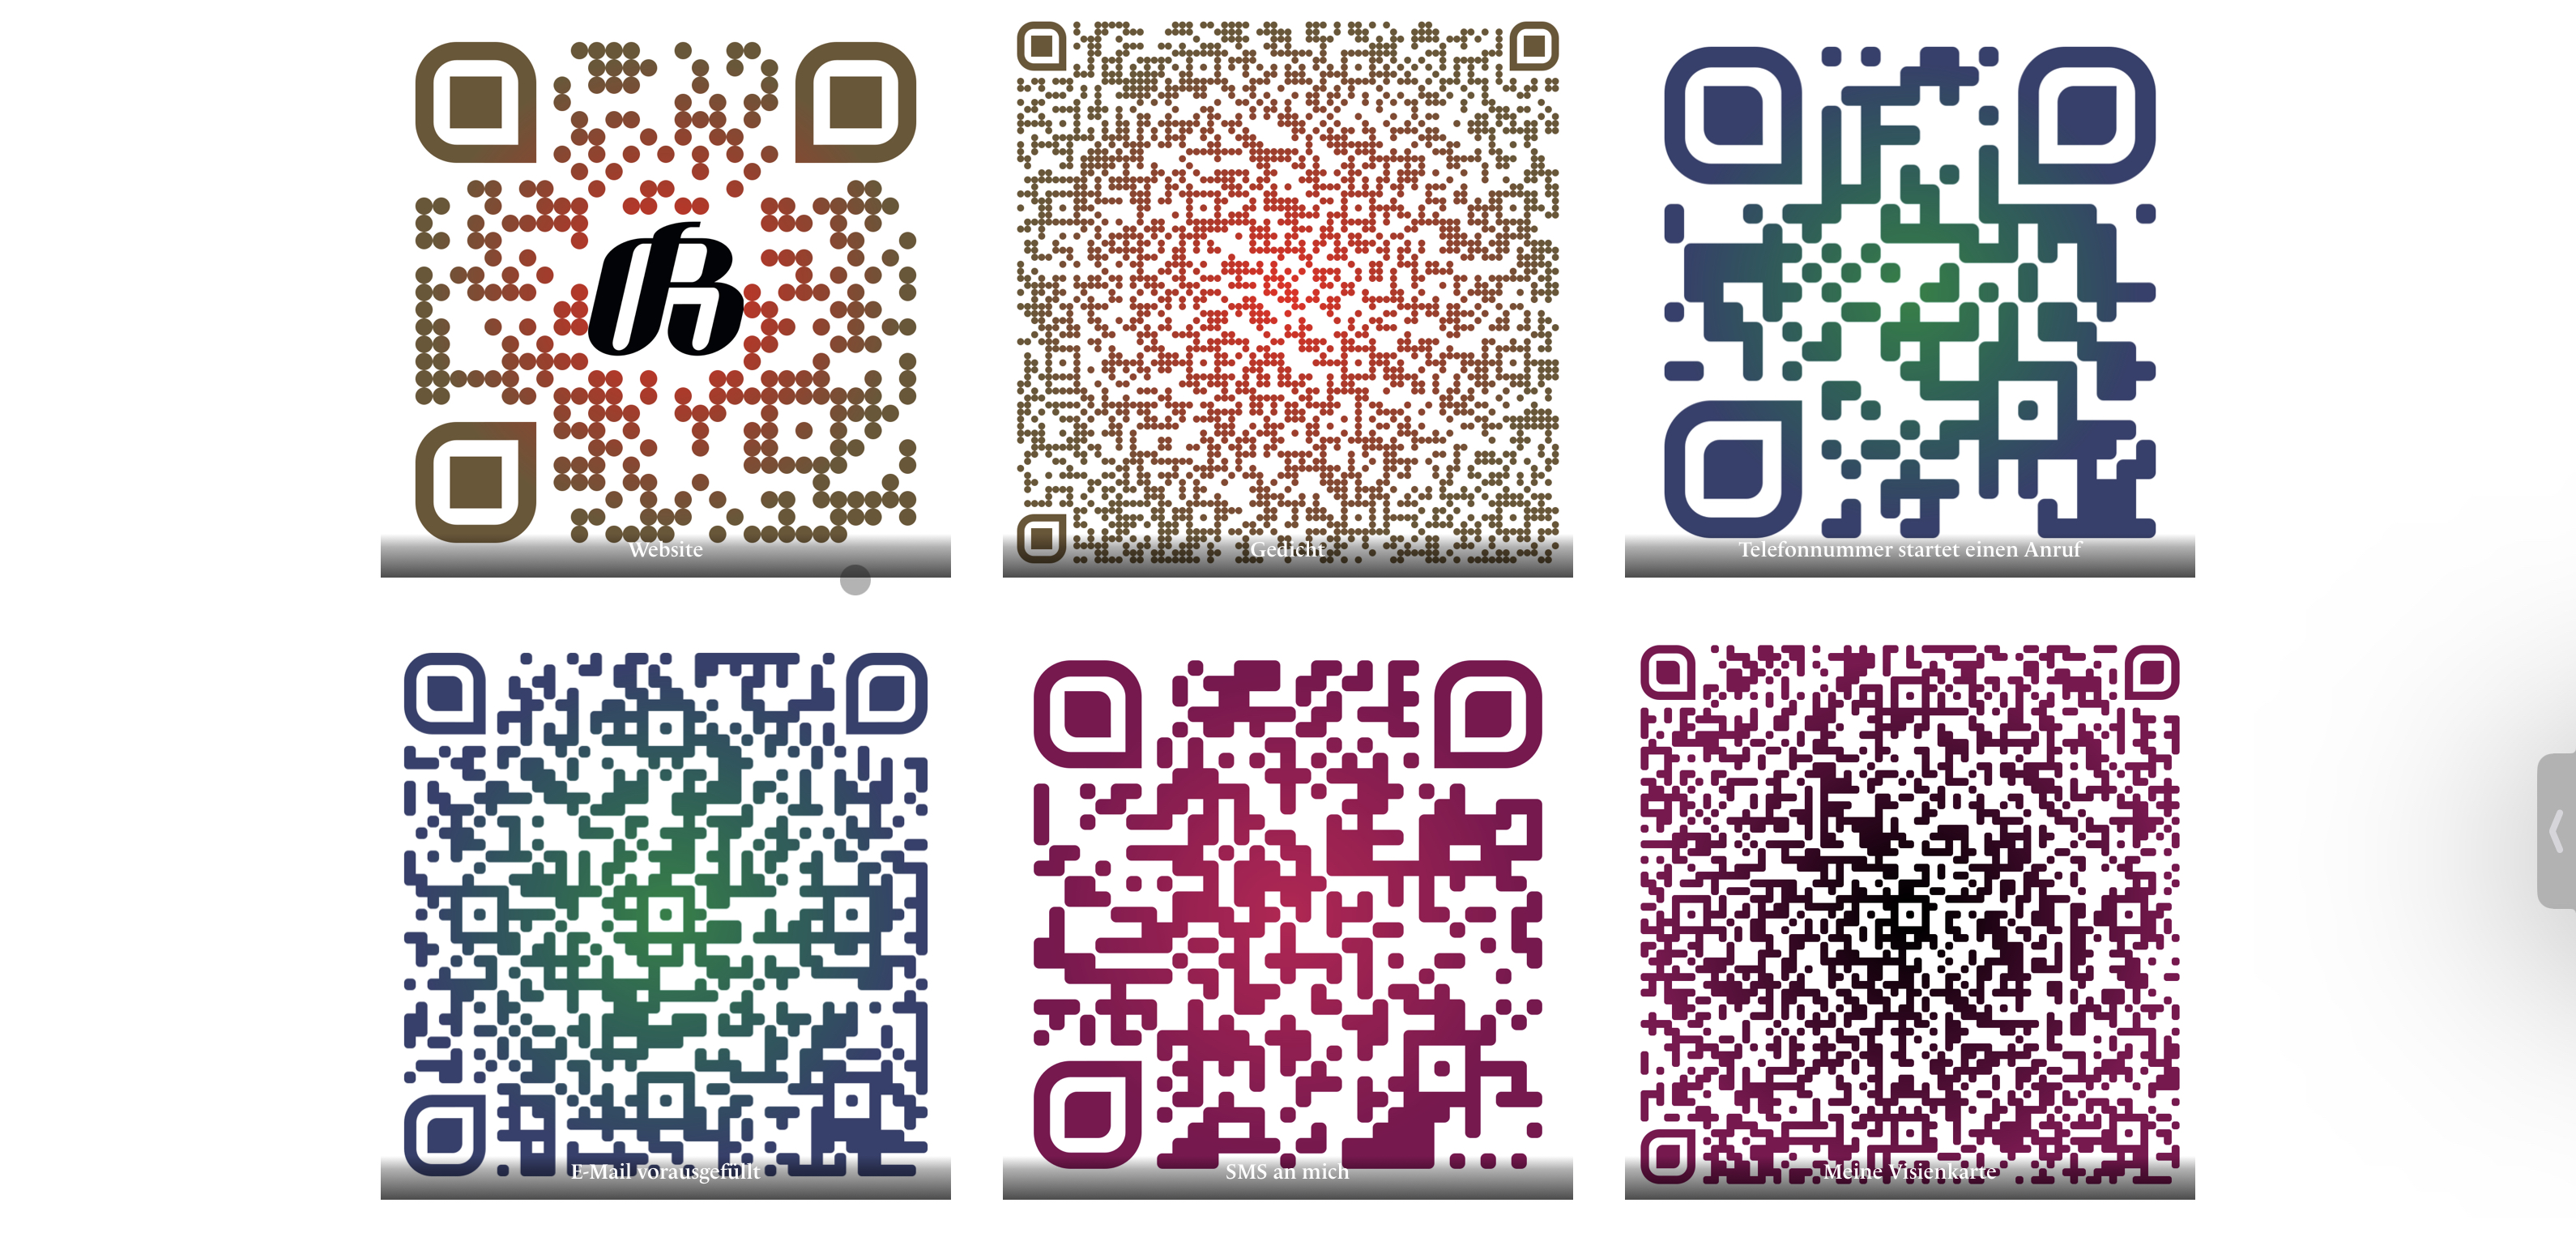 6 verschiedene QR-Codes in unterschiedlichen Farben auf weissem Grund